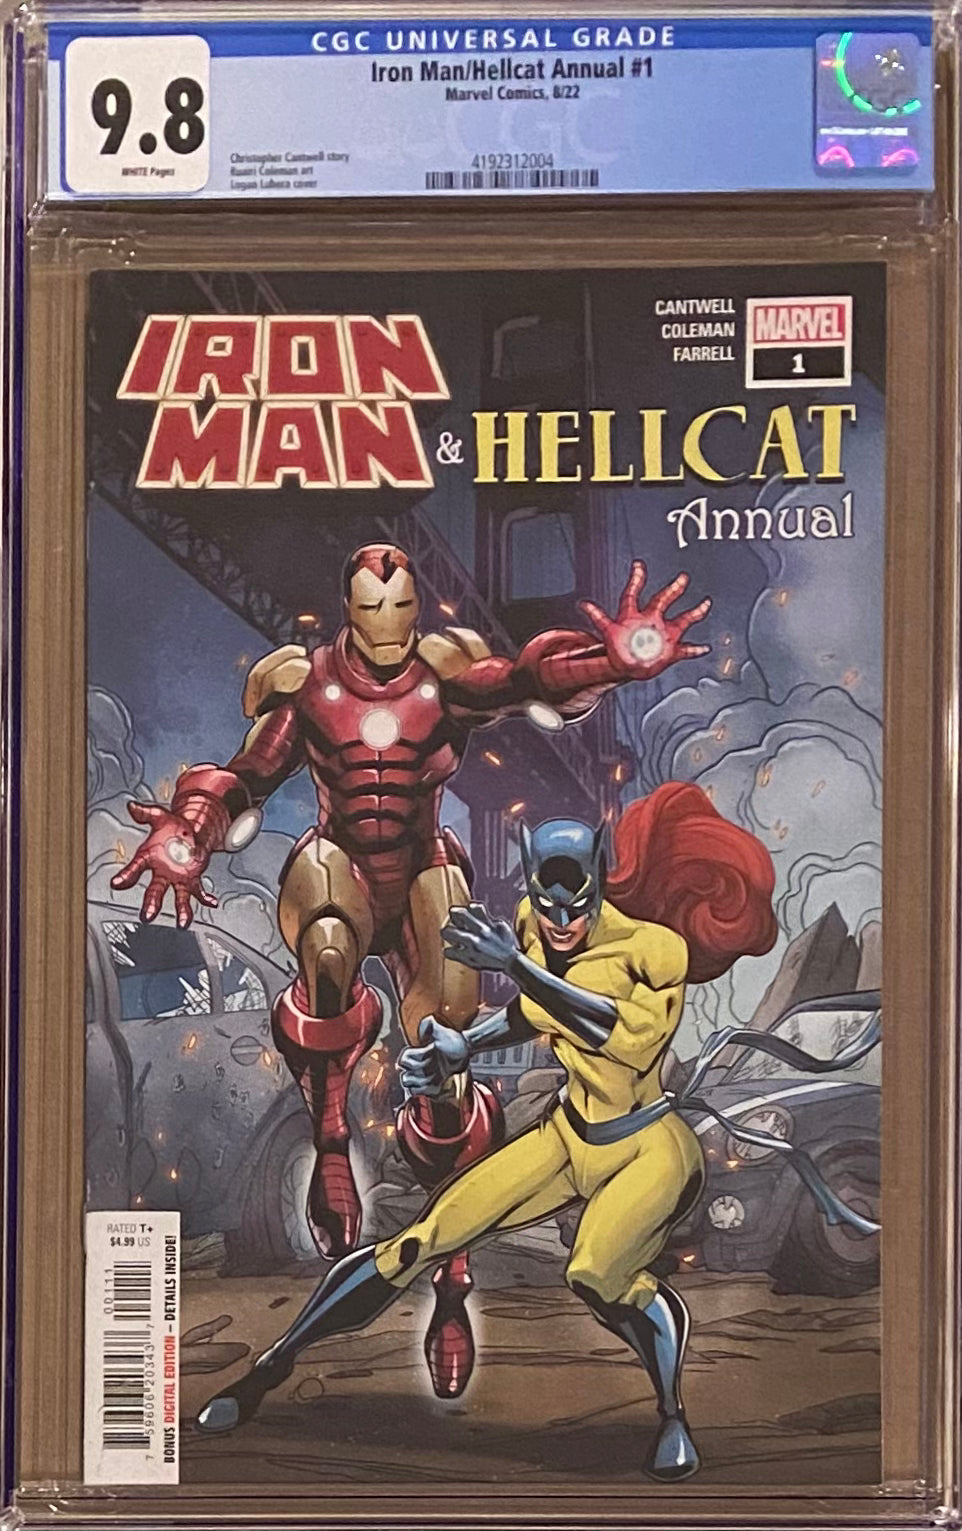 Iron Man/Hellcat Annual #1 CGC 9.8